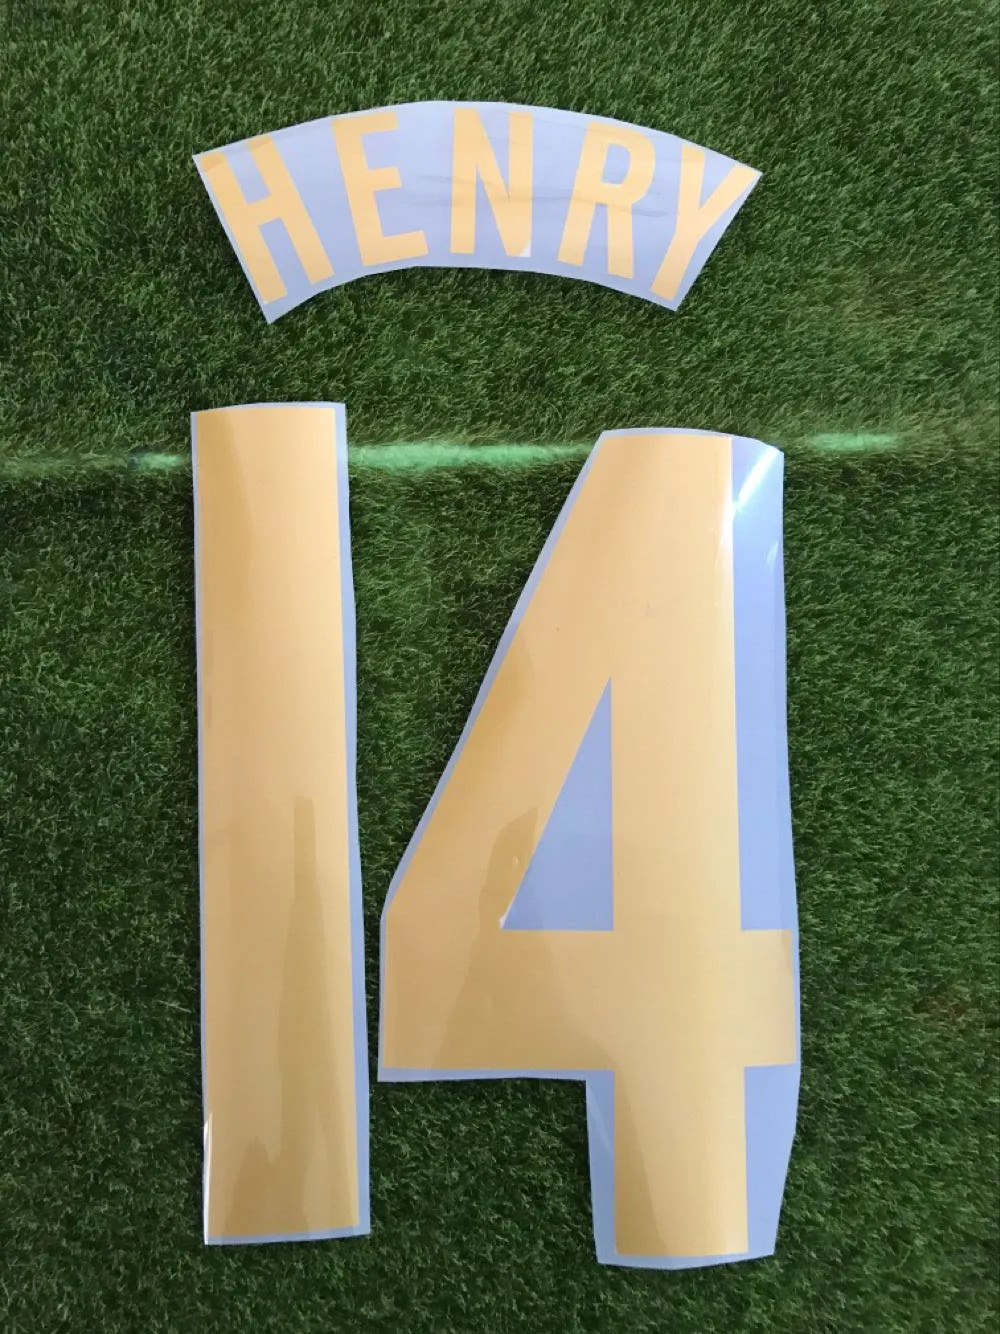 

#14 HENRY Nameset #10 Bergkamp #4 Vieira Custom Any Name Number Printing Heat Transfer Iron ON Soccer Badge